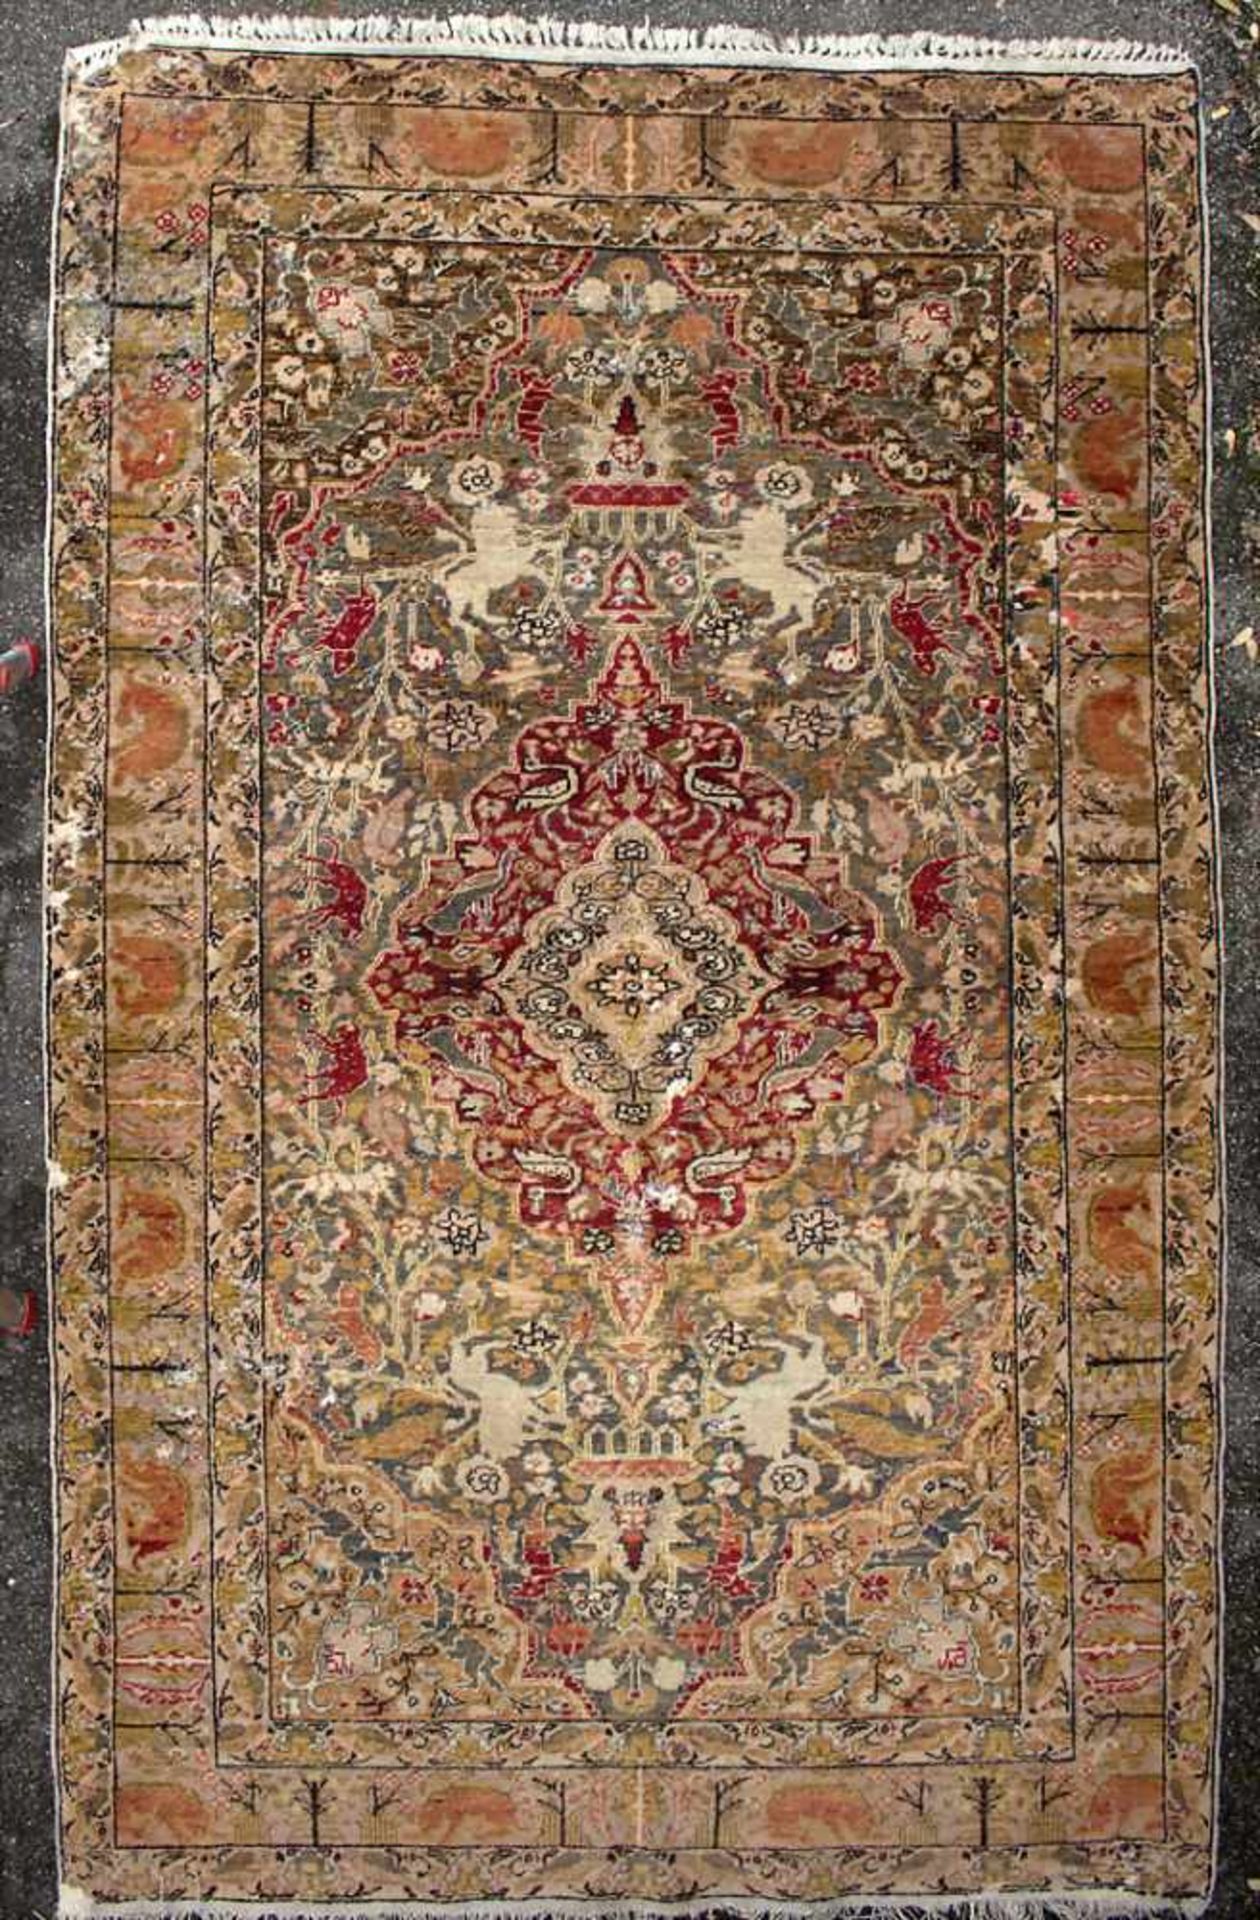 Orientteppich mit Floral- und Tiermotiven / An oriental carpet with flowers and animalsMaterial: